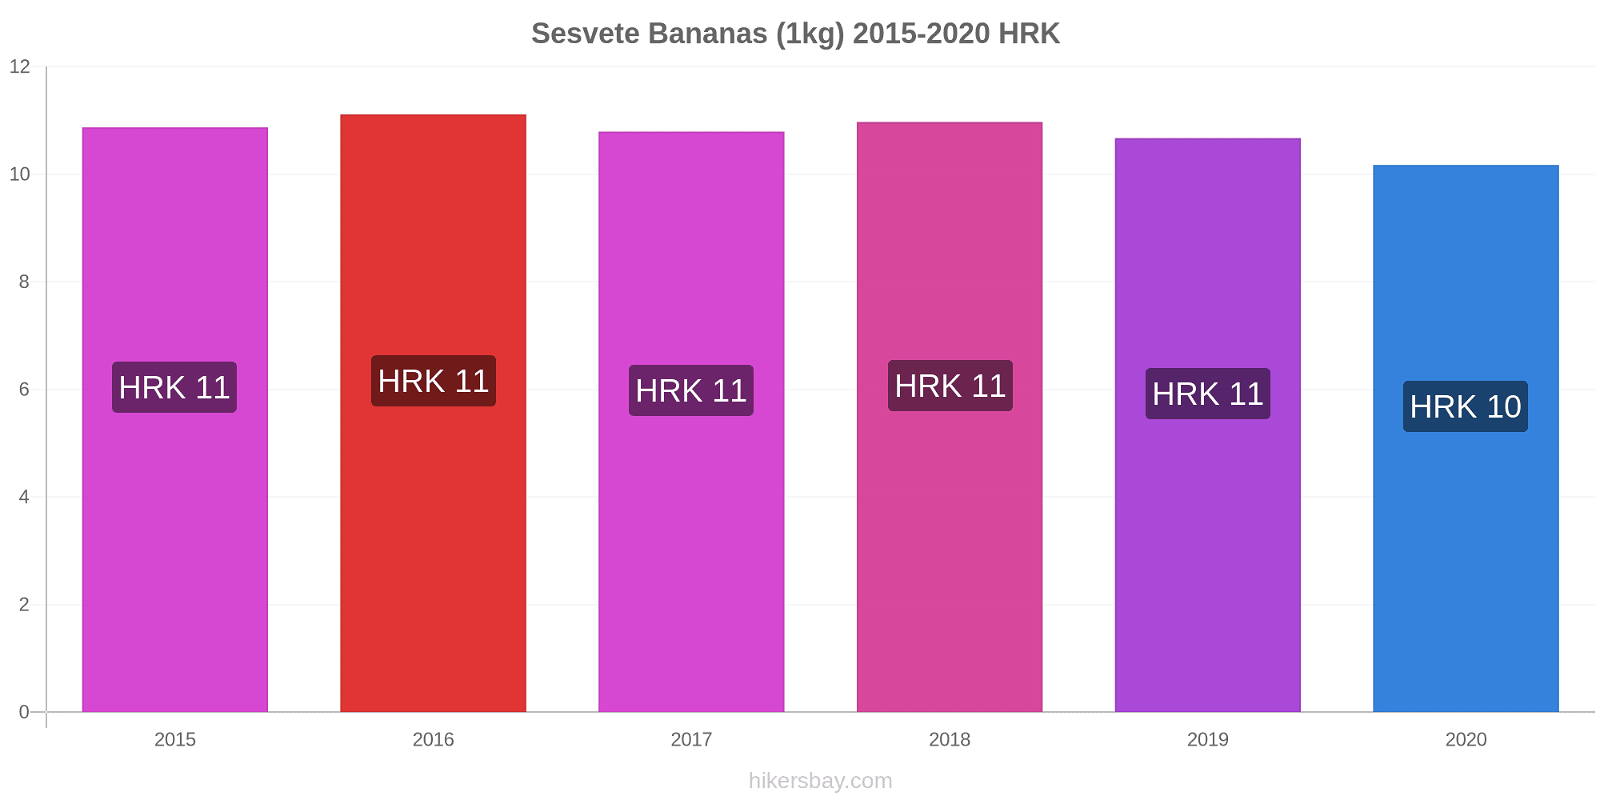 Sesvete variação de preço Banana (1kg) hikersbay.com